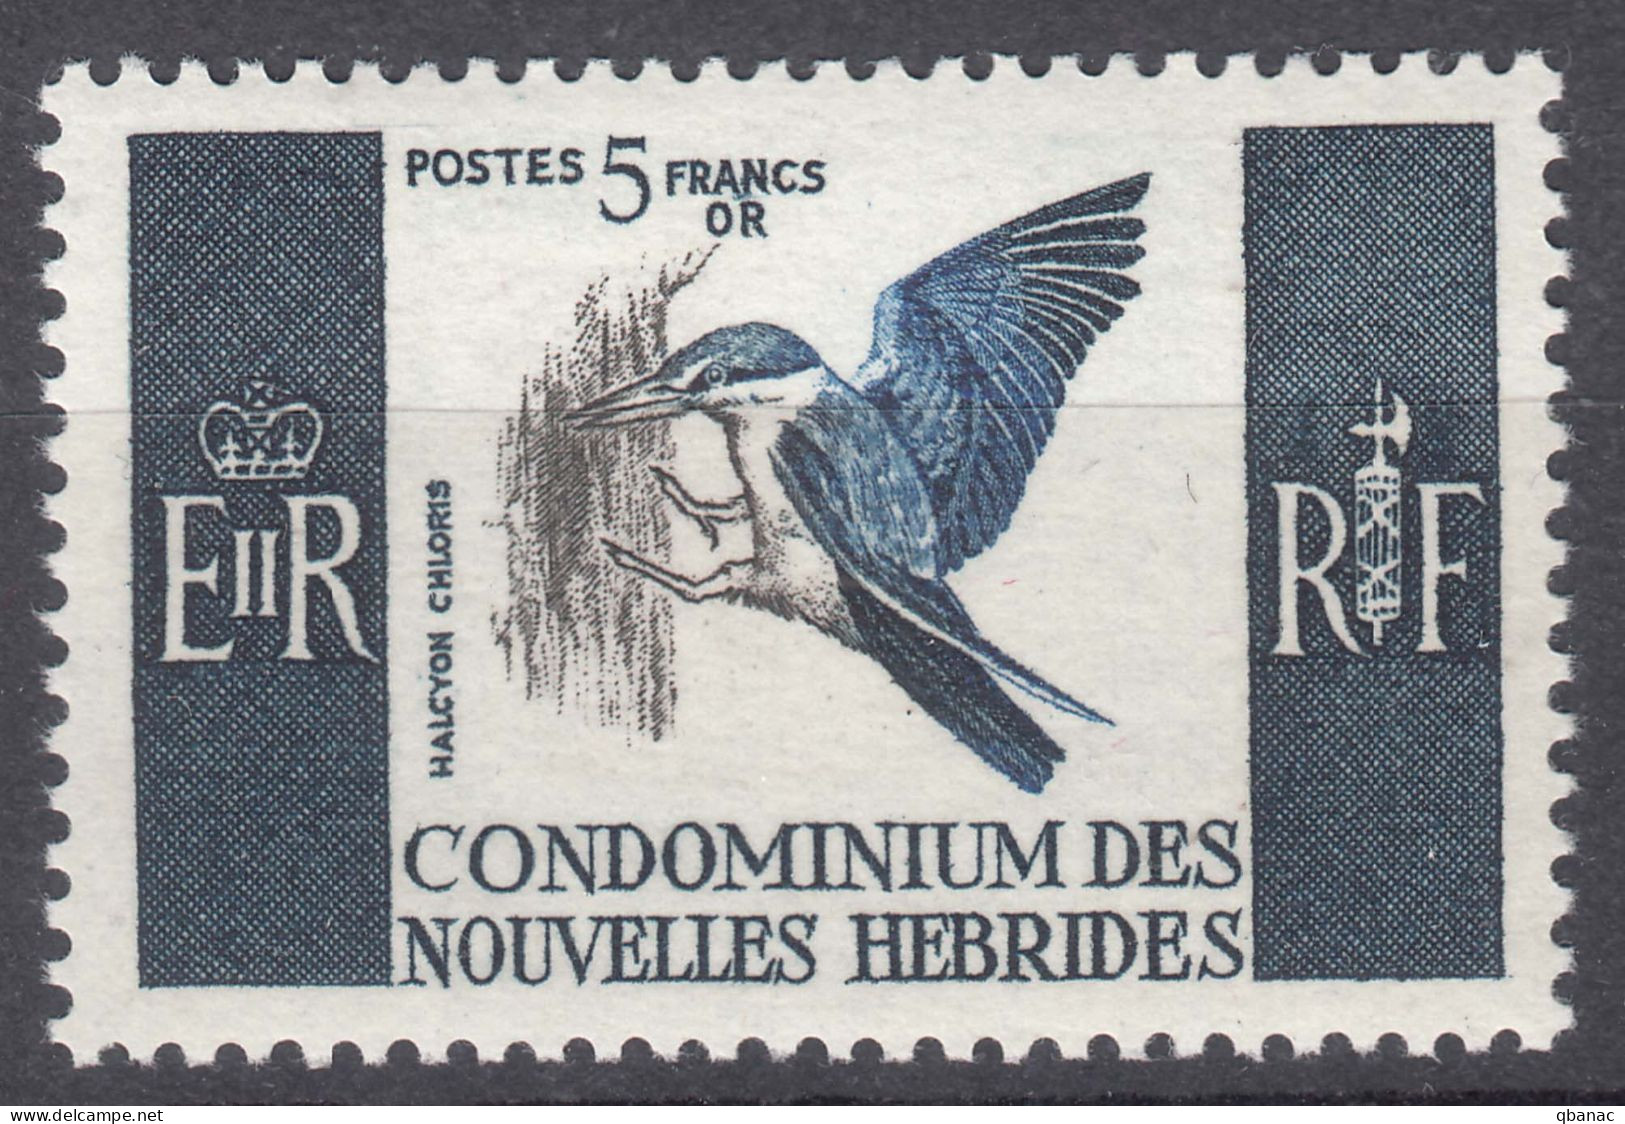 New Hebrides Nouvelles Hebrides French Legend 1966 Birds Mi#243 Mint Never Hinged (sans Charniere) - Neufs